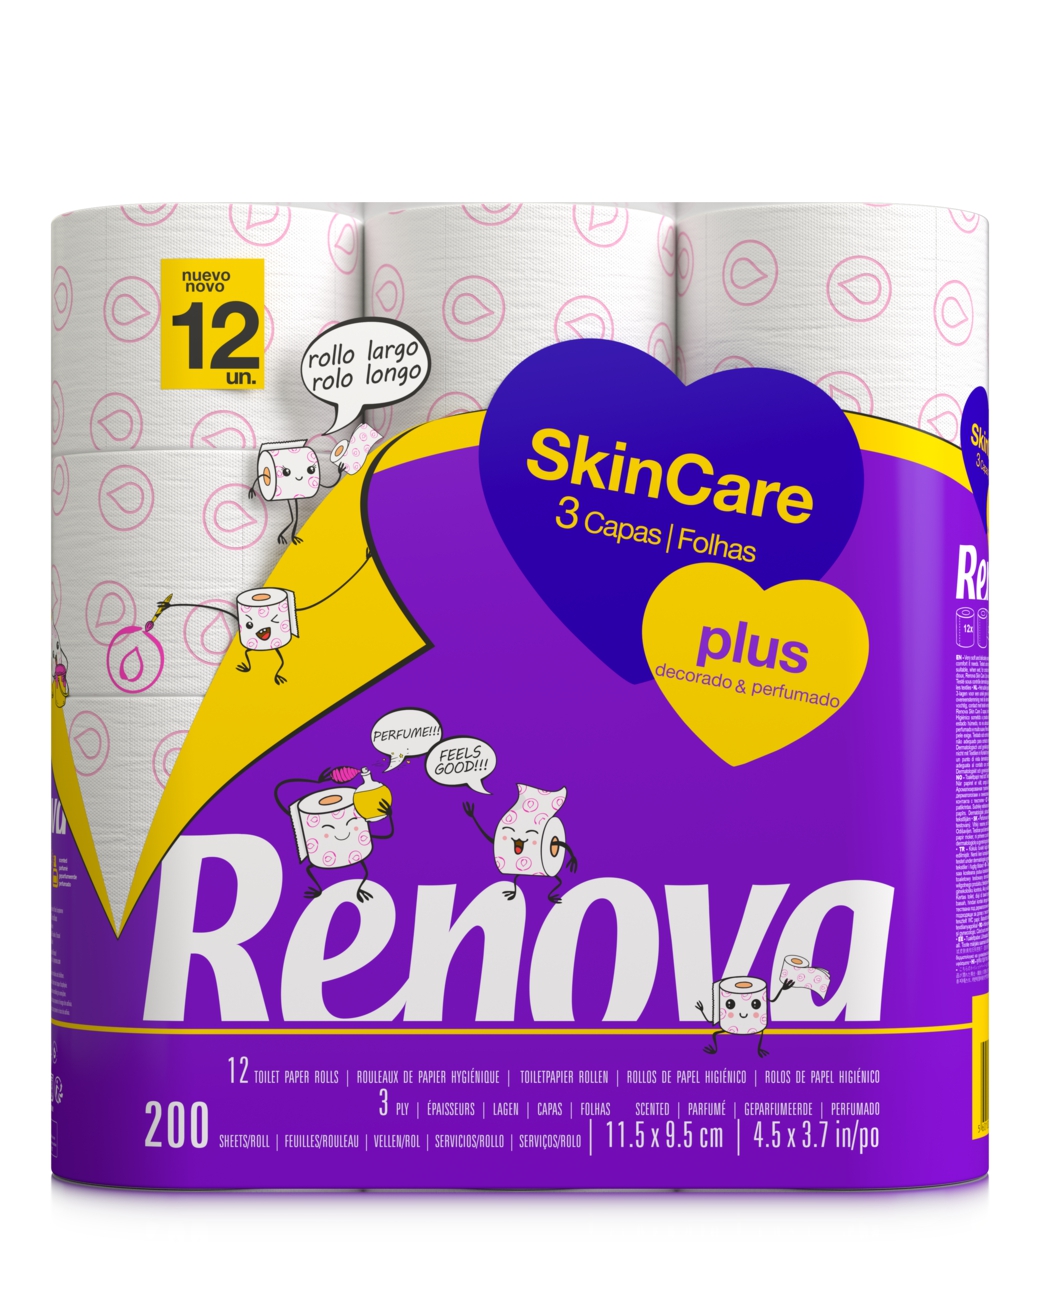 RENOVA, Papel higiénico Skin Care Plus de Renova.